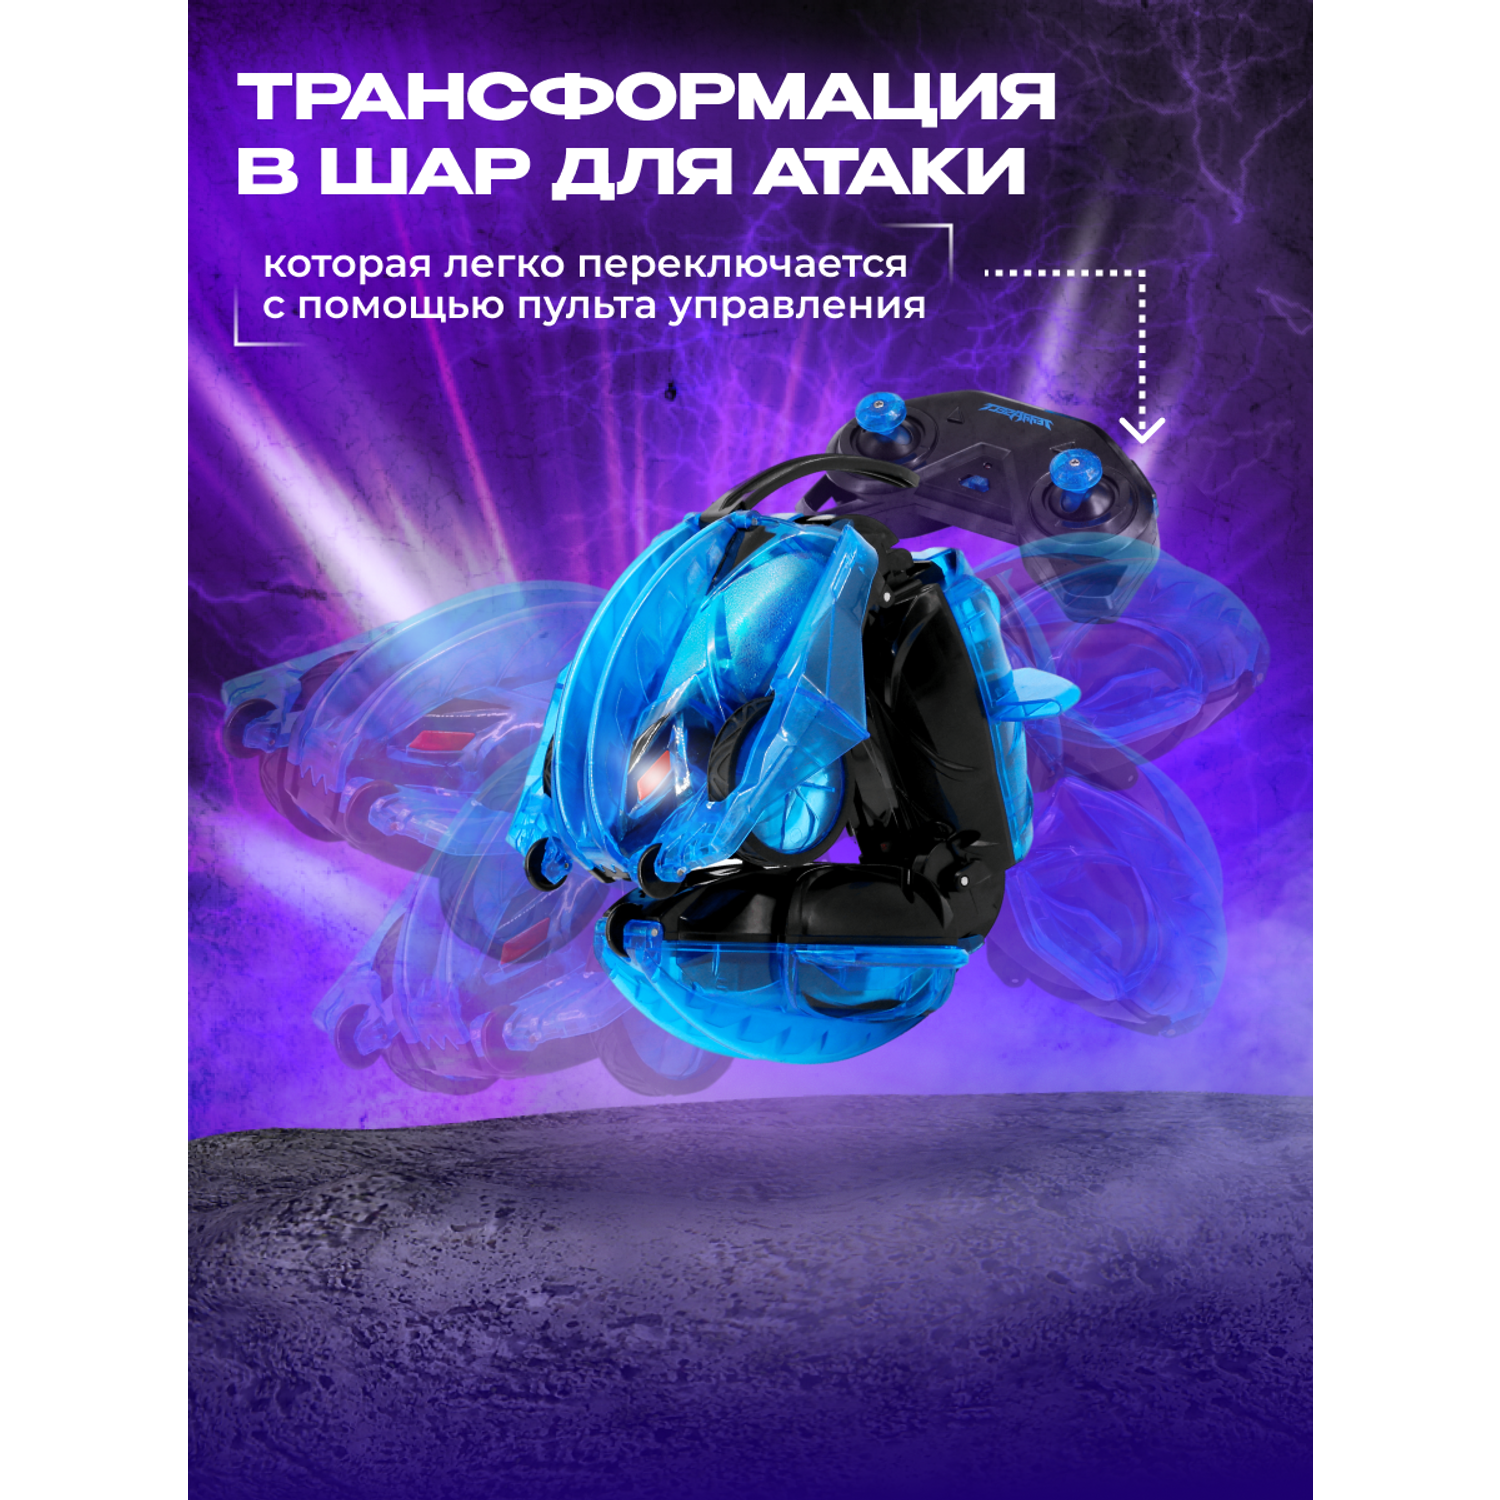 Игрушка радиоуправляемая Terra Sect машинка трансформер в виде ящерицы синяя - фото 7